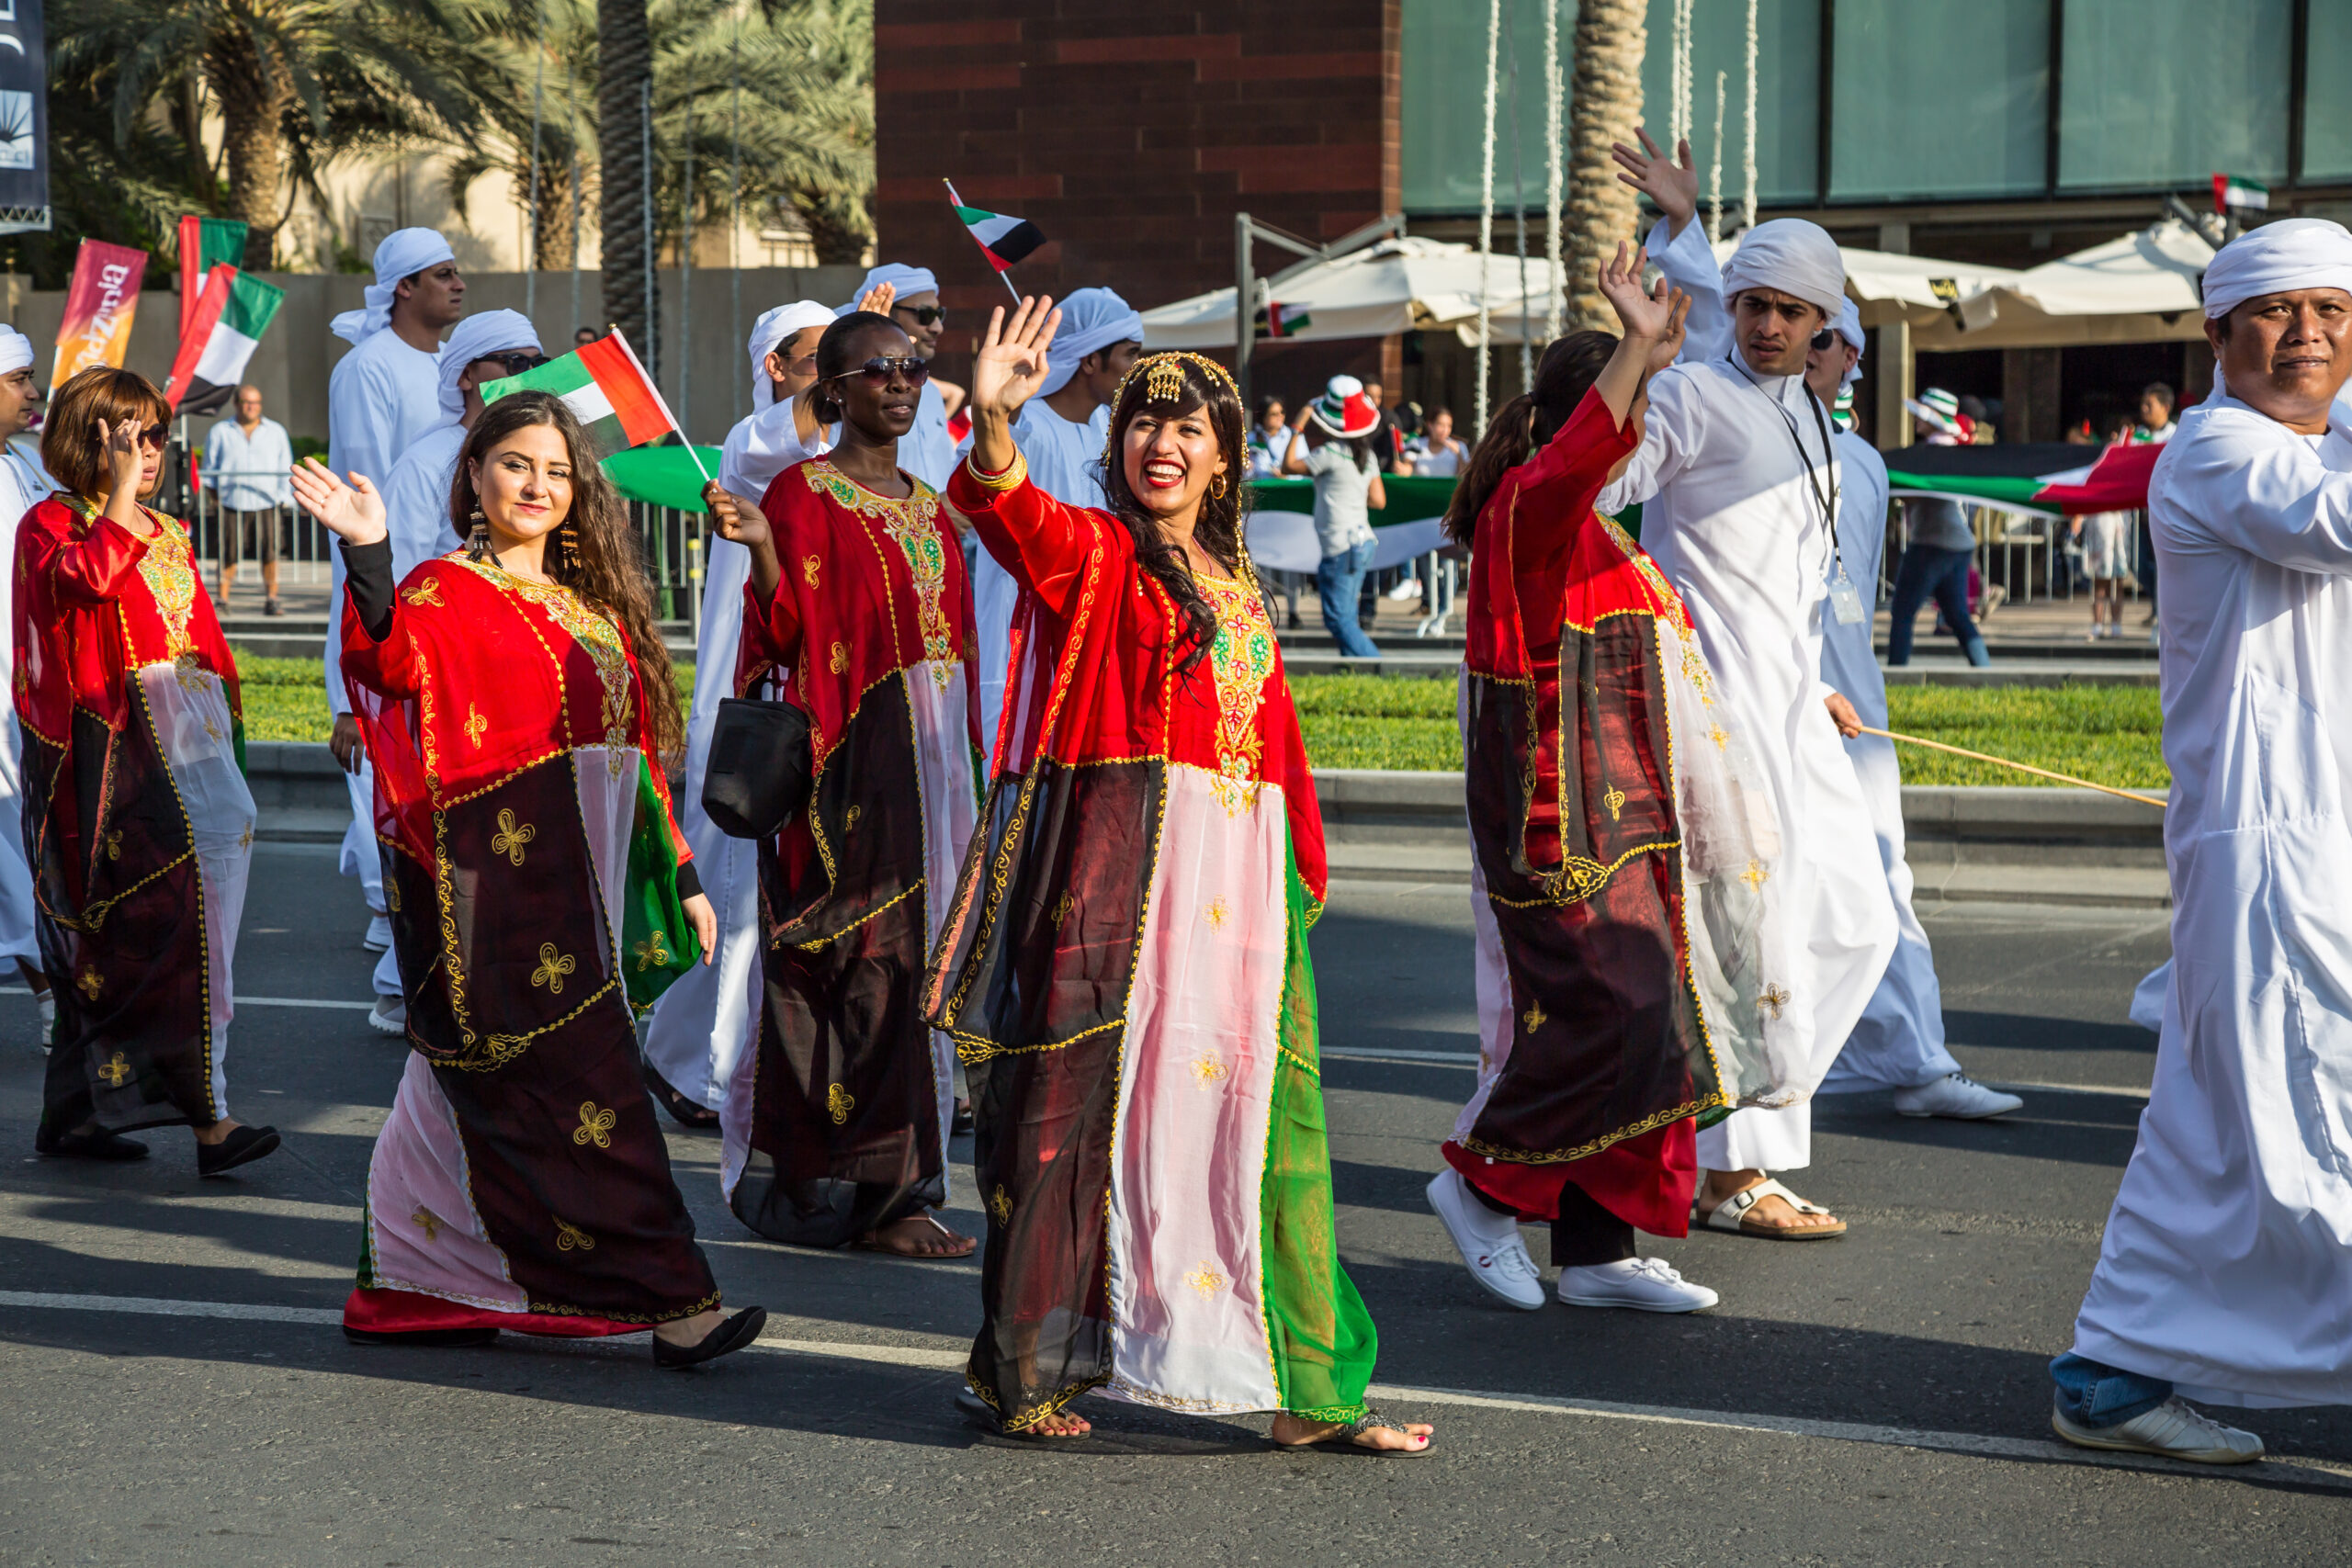 Public holidays in Dubai - UAE National Day parade